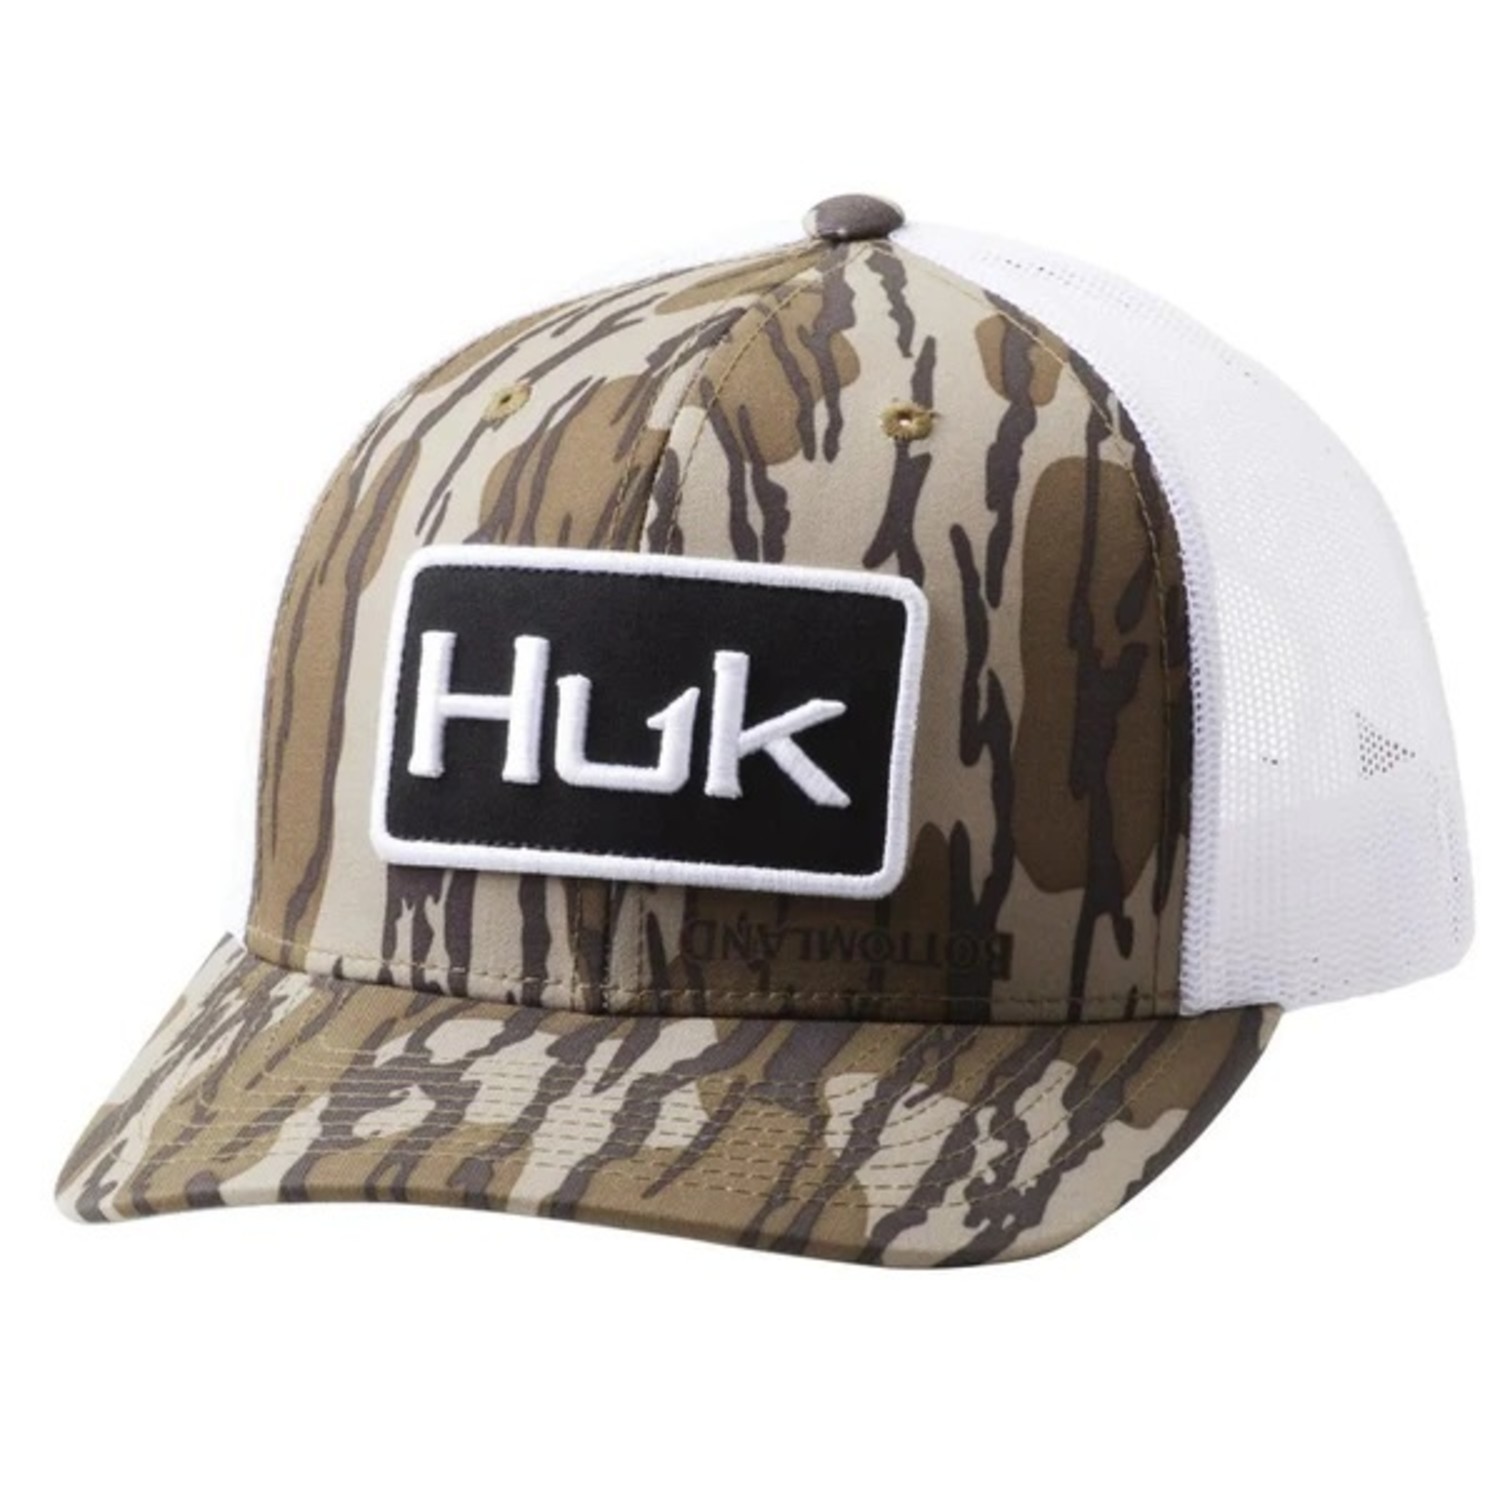 Huk Men's Performance Bucket Hat – hdosport